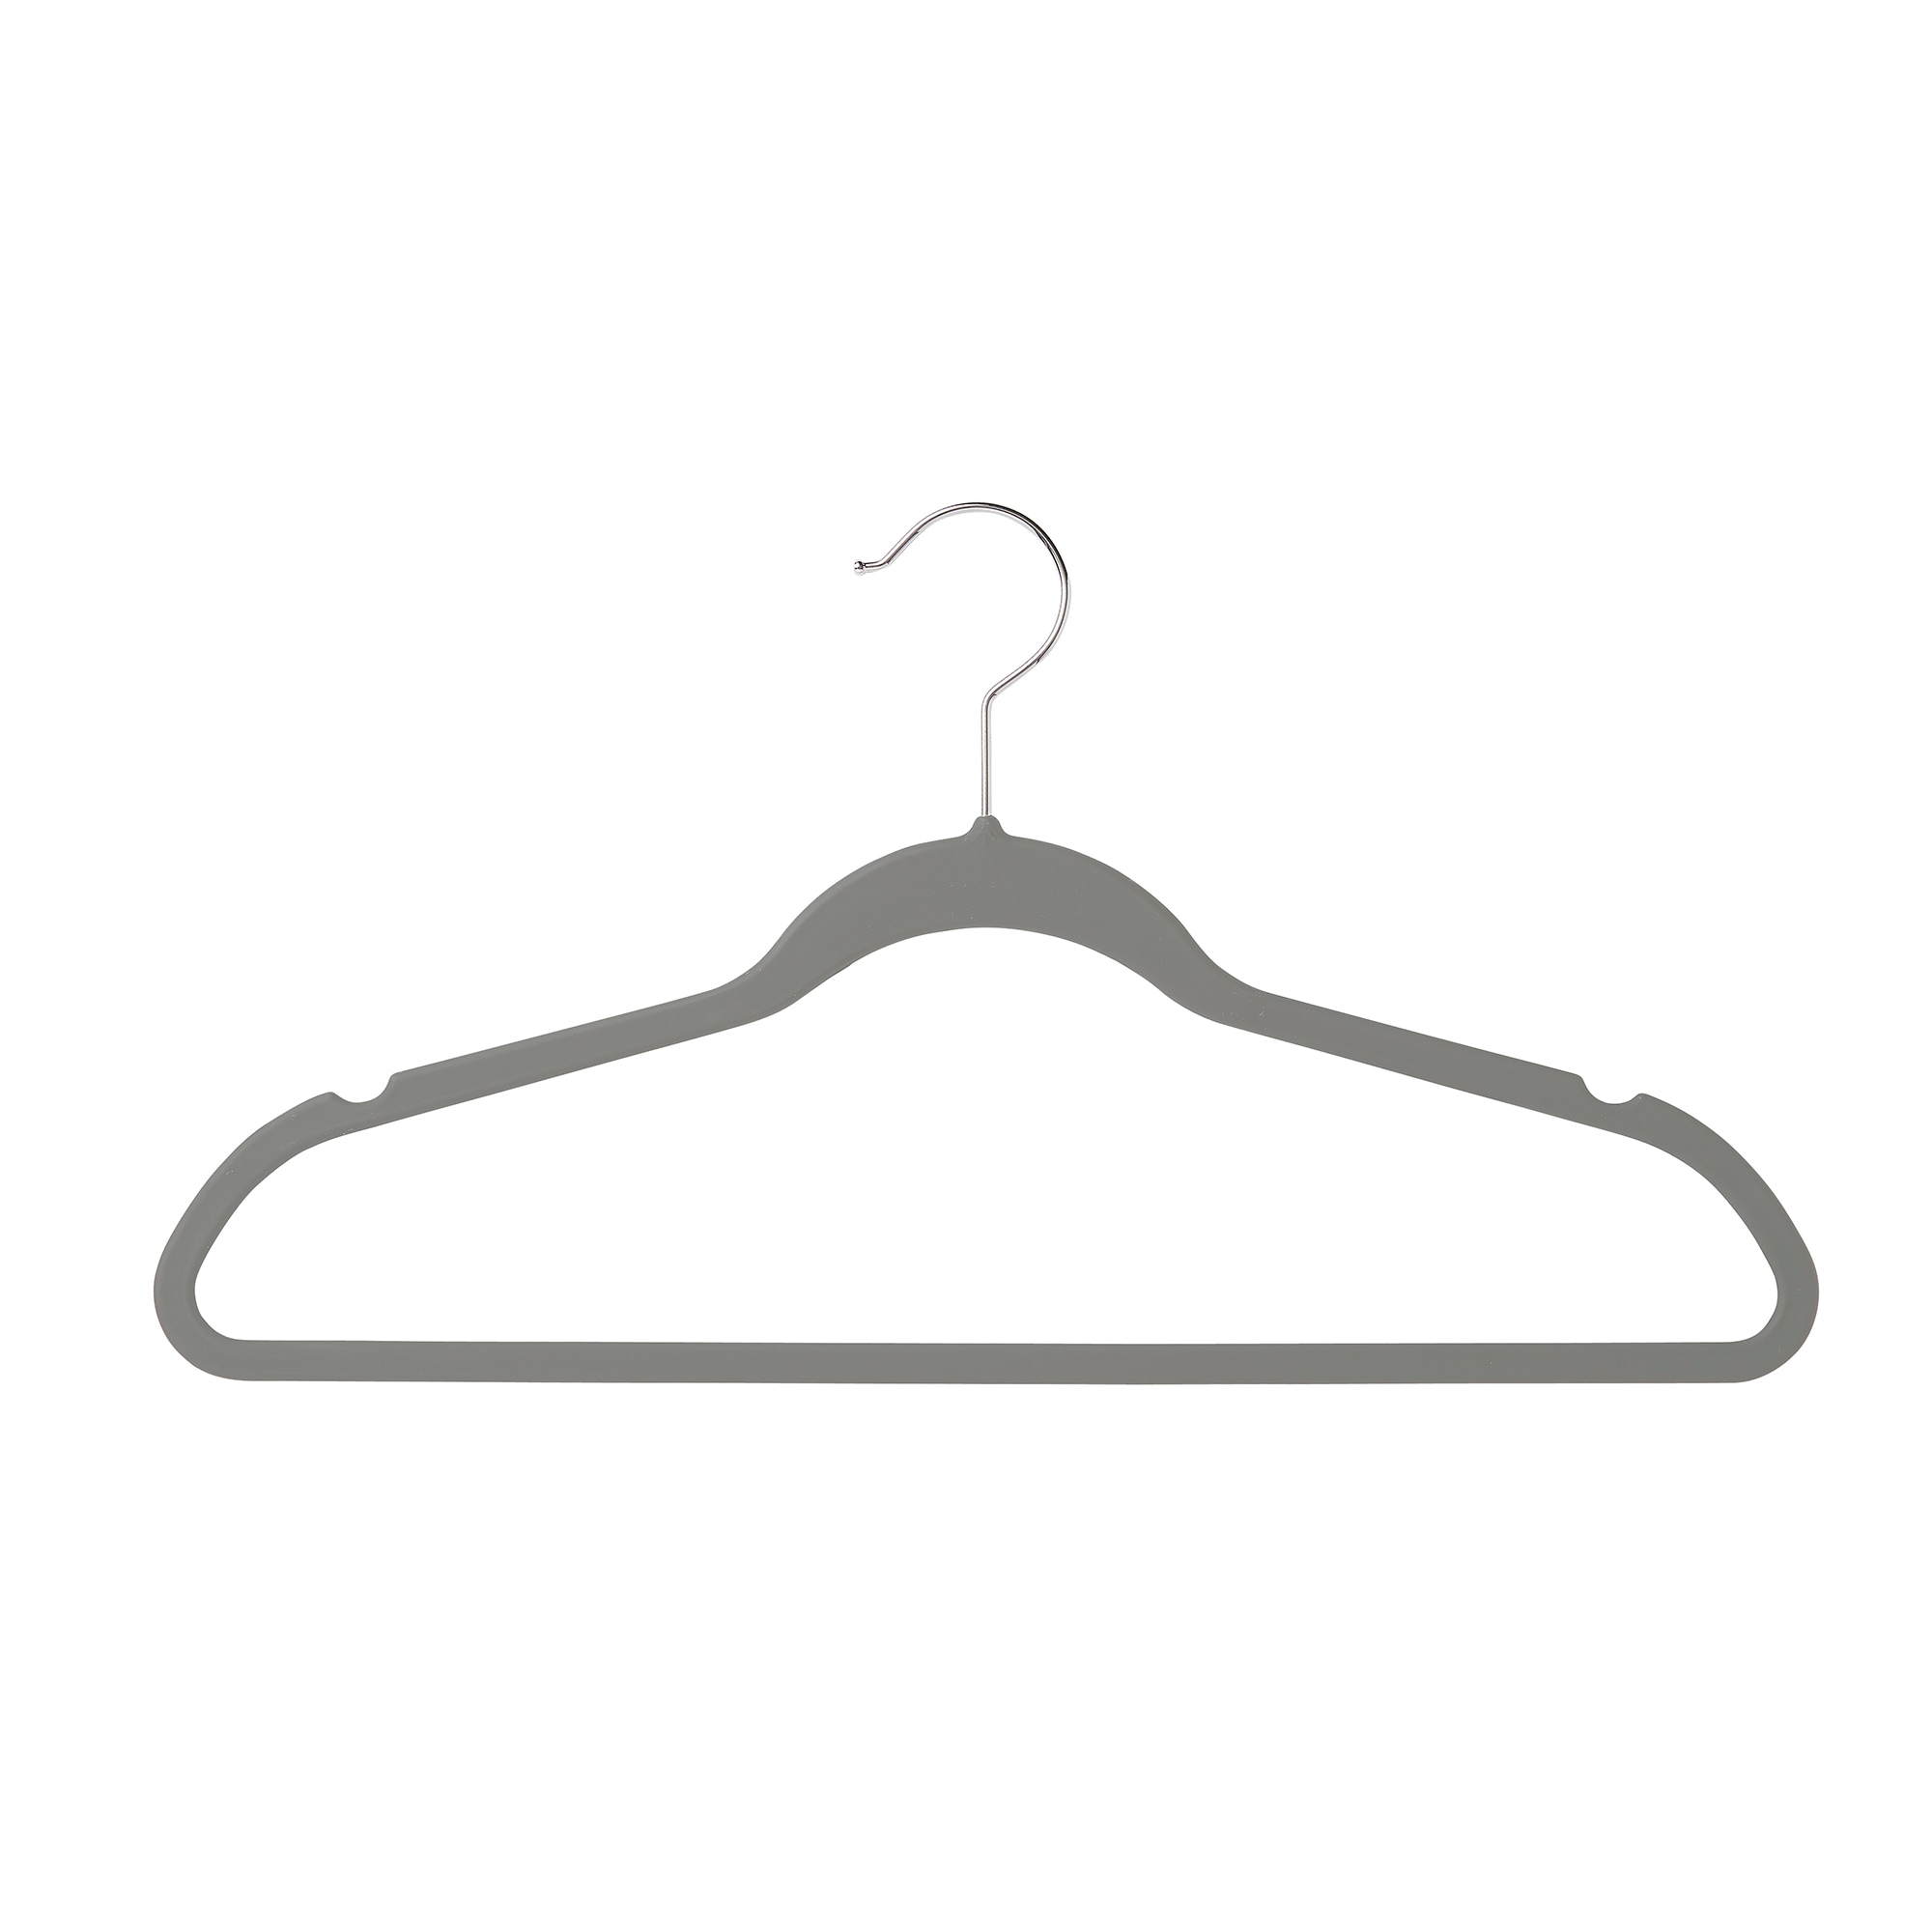 5pcs Clothes Hangers for Kids Aluminum Alloy Traceless Non-slip